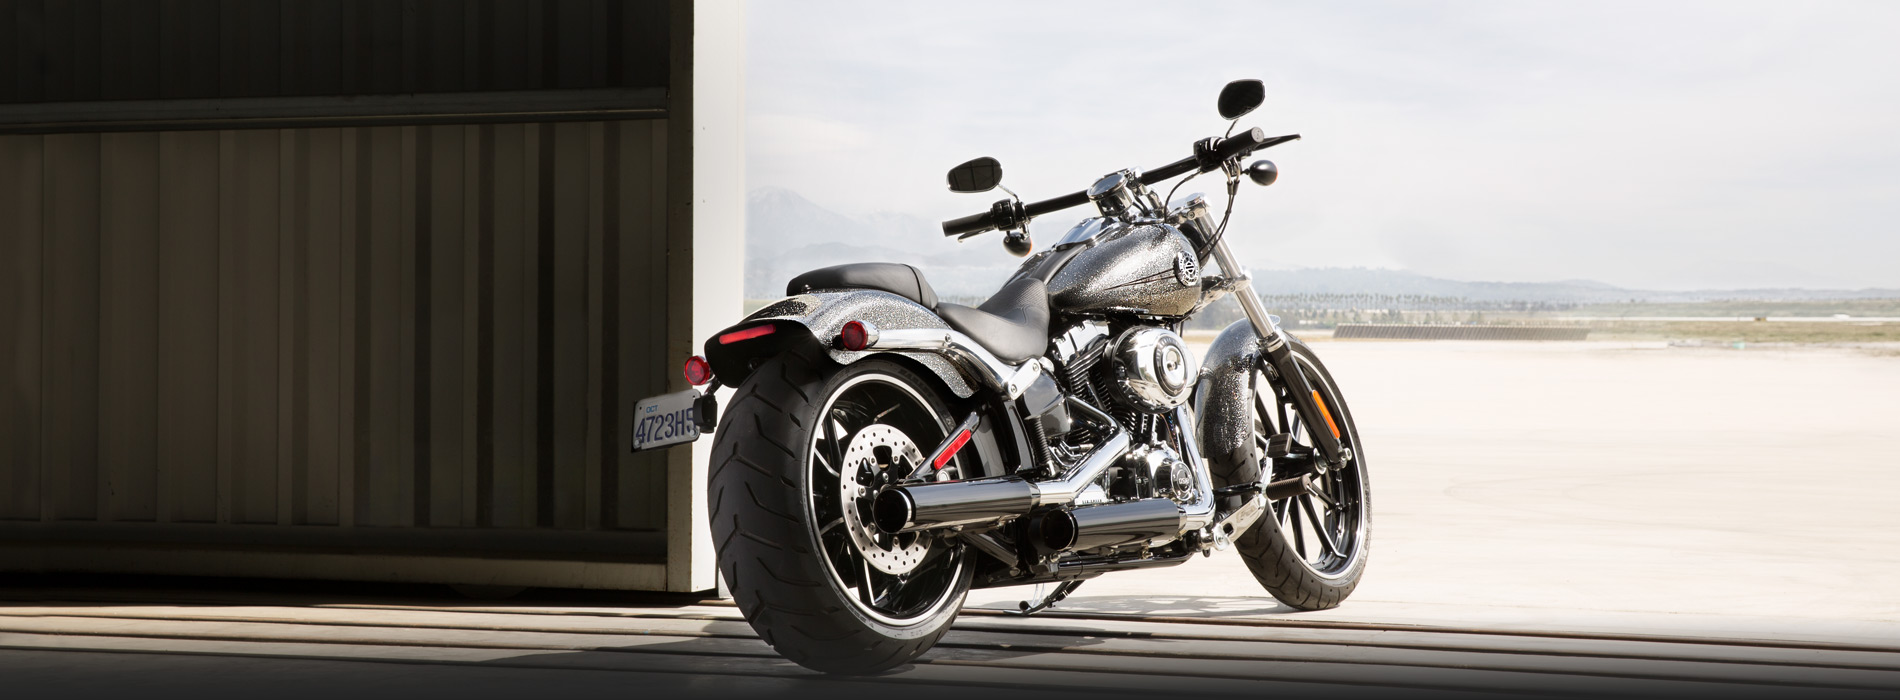 Harley-Davidson Softail Breakout 2014 #1